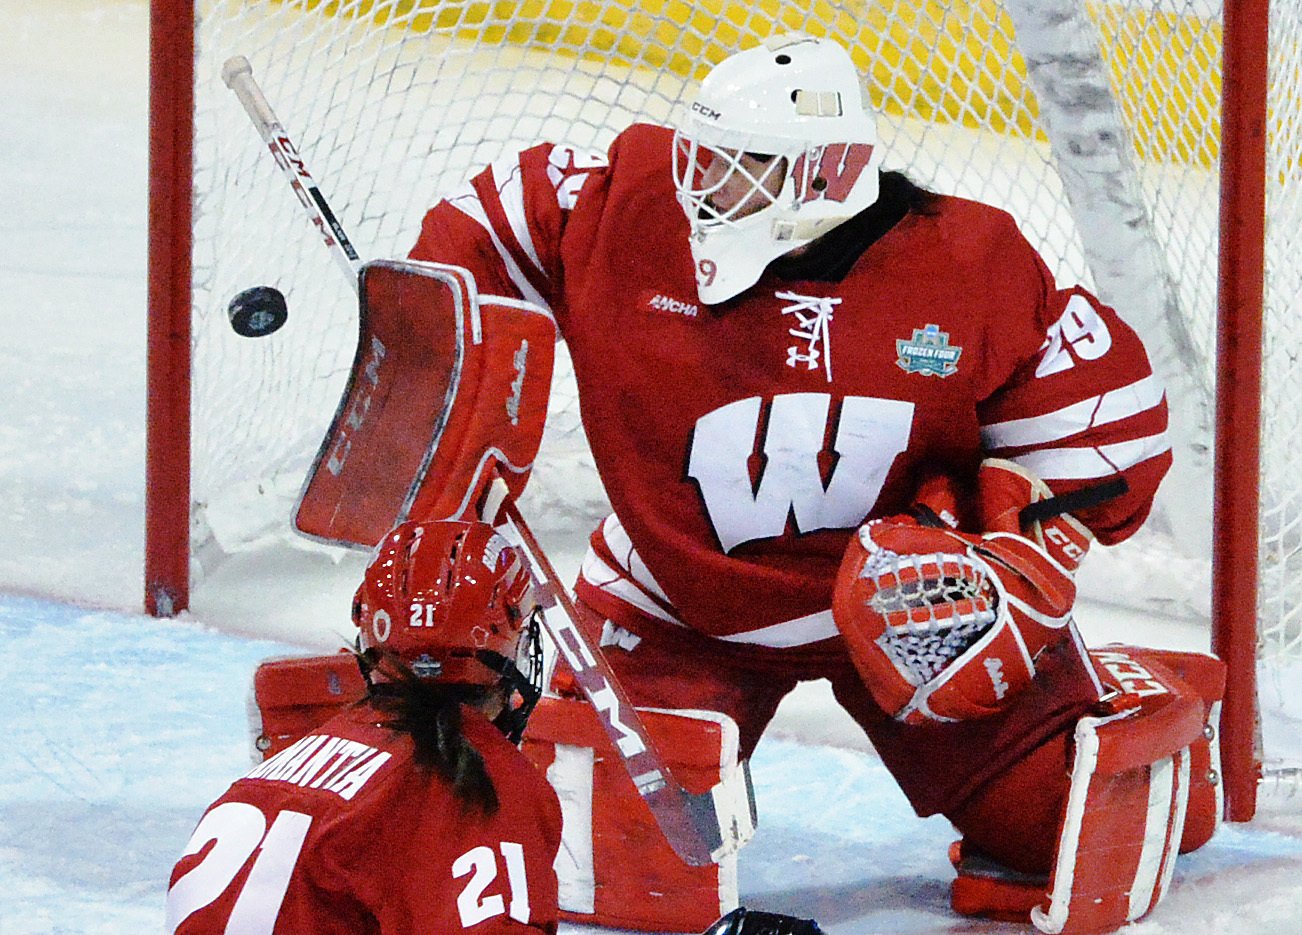 Watts scores in OT, Wisconsin wins women’s Frozen Four hockey title